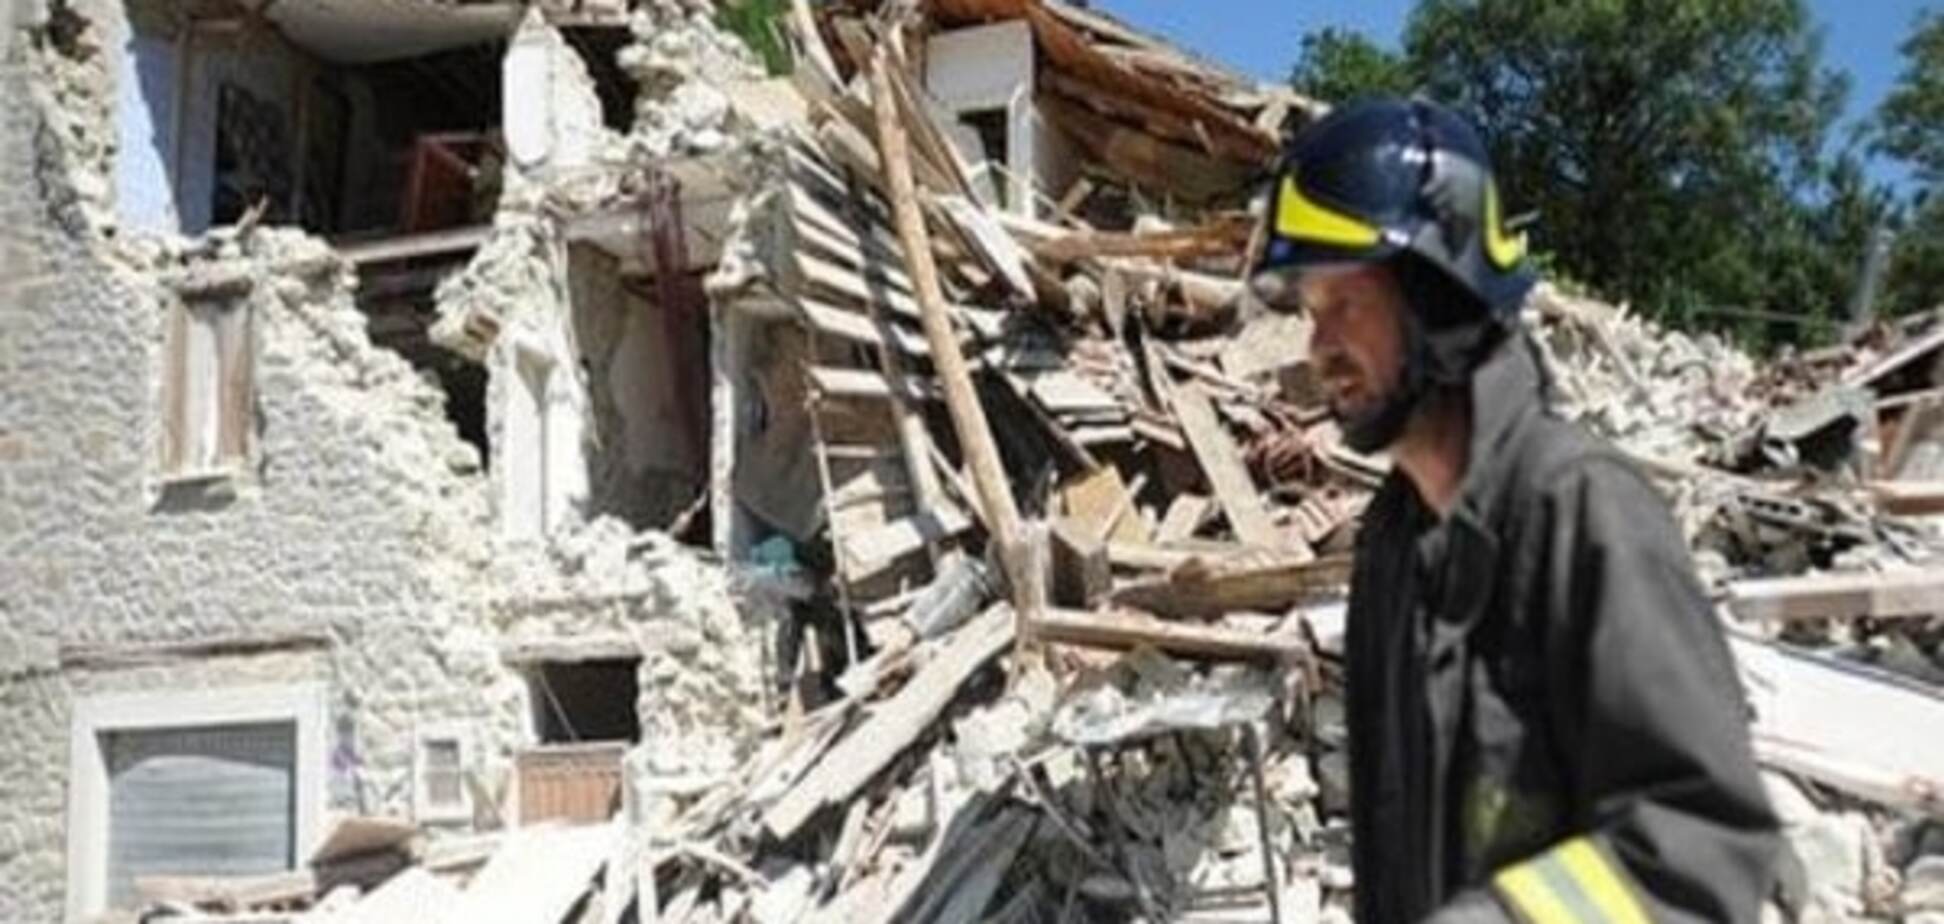 Італійський уряд оголосив надзвичайний стан через наслідки землетрусу